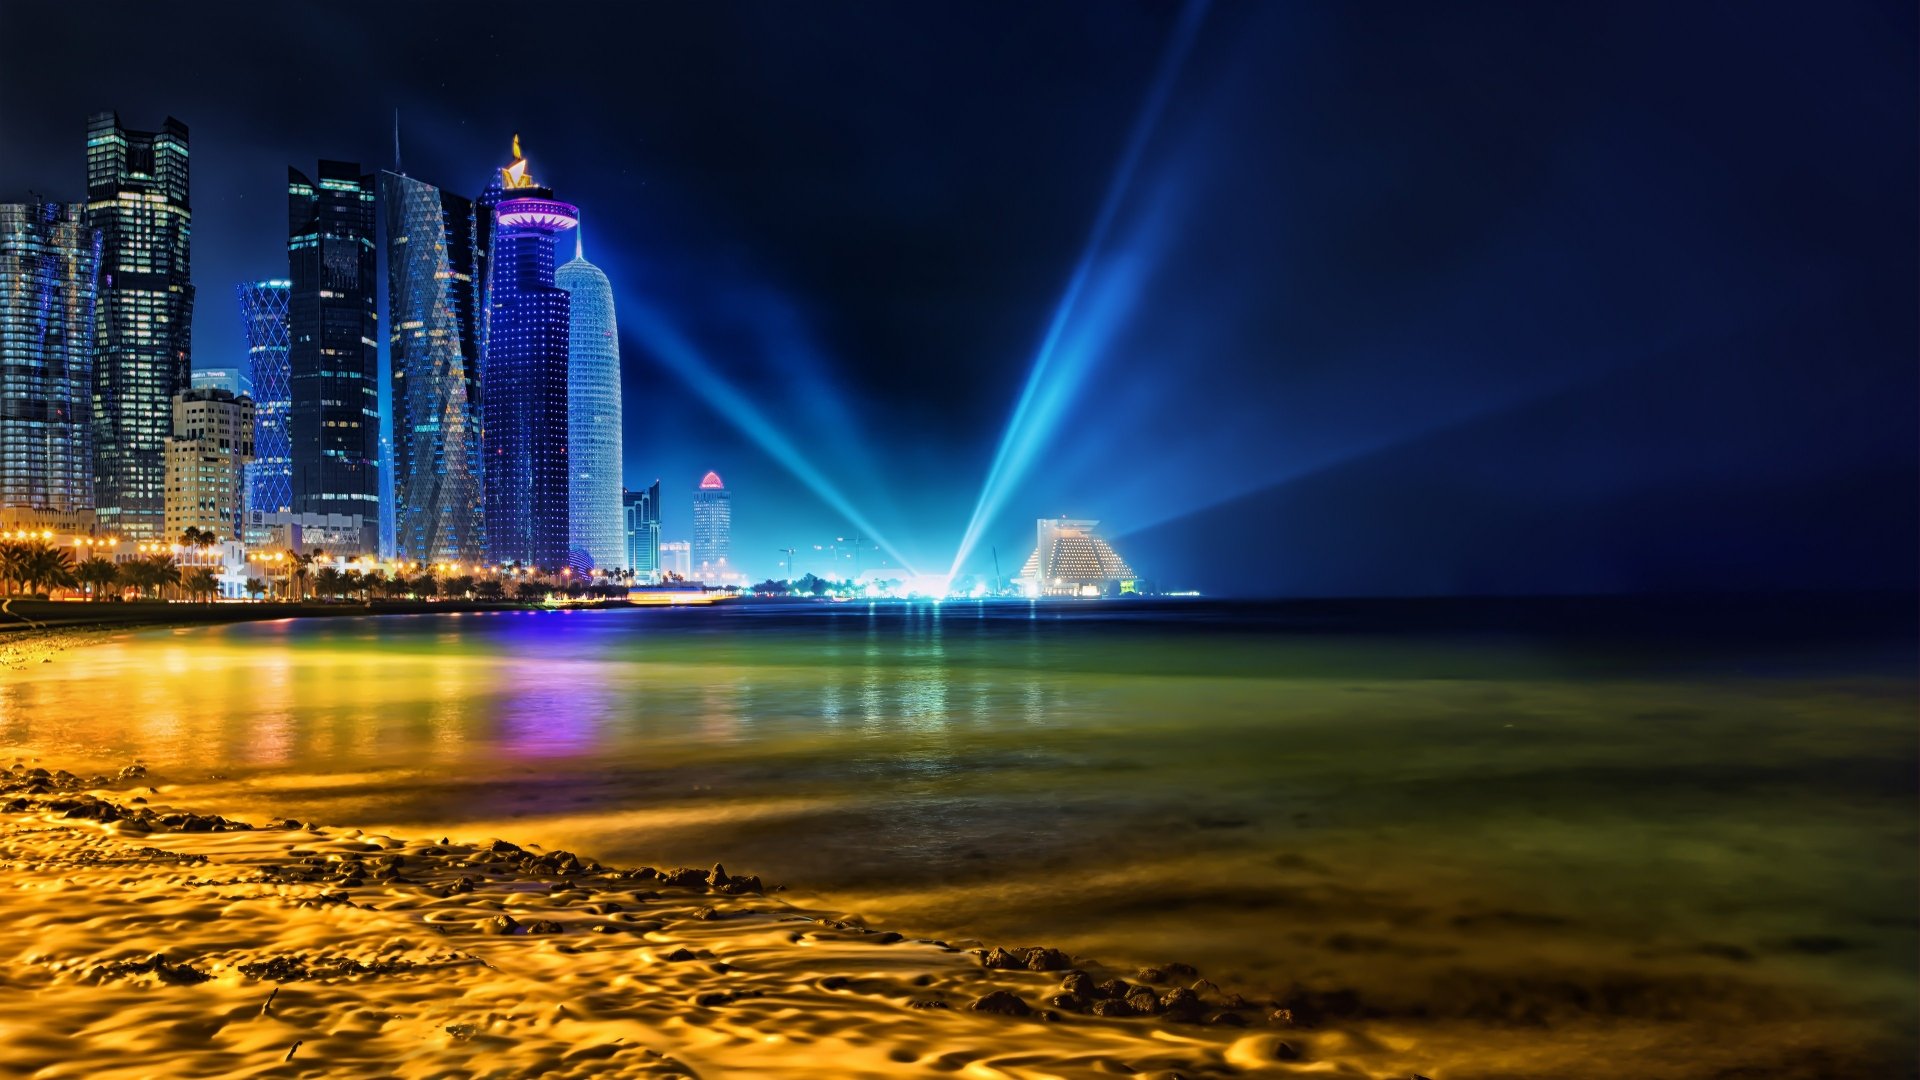 Hình nền siêu nét Doha 4k Bạn muốn đón chào bức hình nền với độ phân giải siêu nét? Vậy thì hãy tải ngay hình nền Doha 4k. Với những chi tiết cực kỳ chân thật và sắc nét, bạn sẽ có cảm giác như đang đứng ngay giữa trung tâm thành phố Qatar.